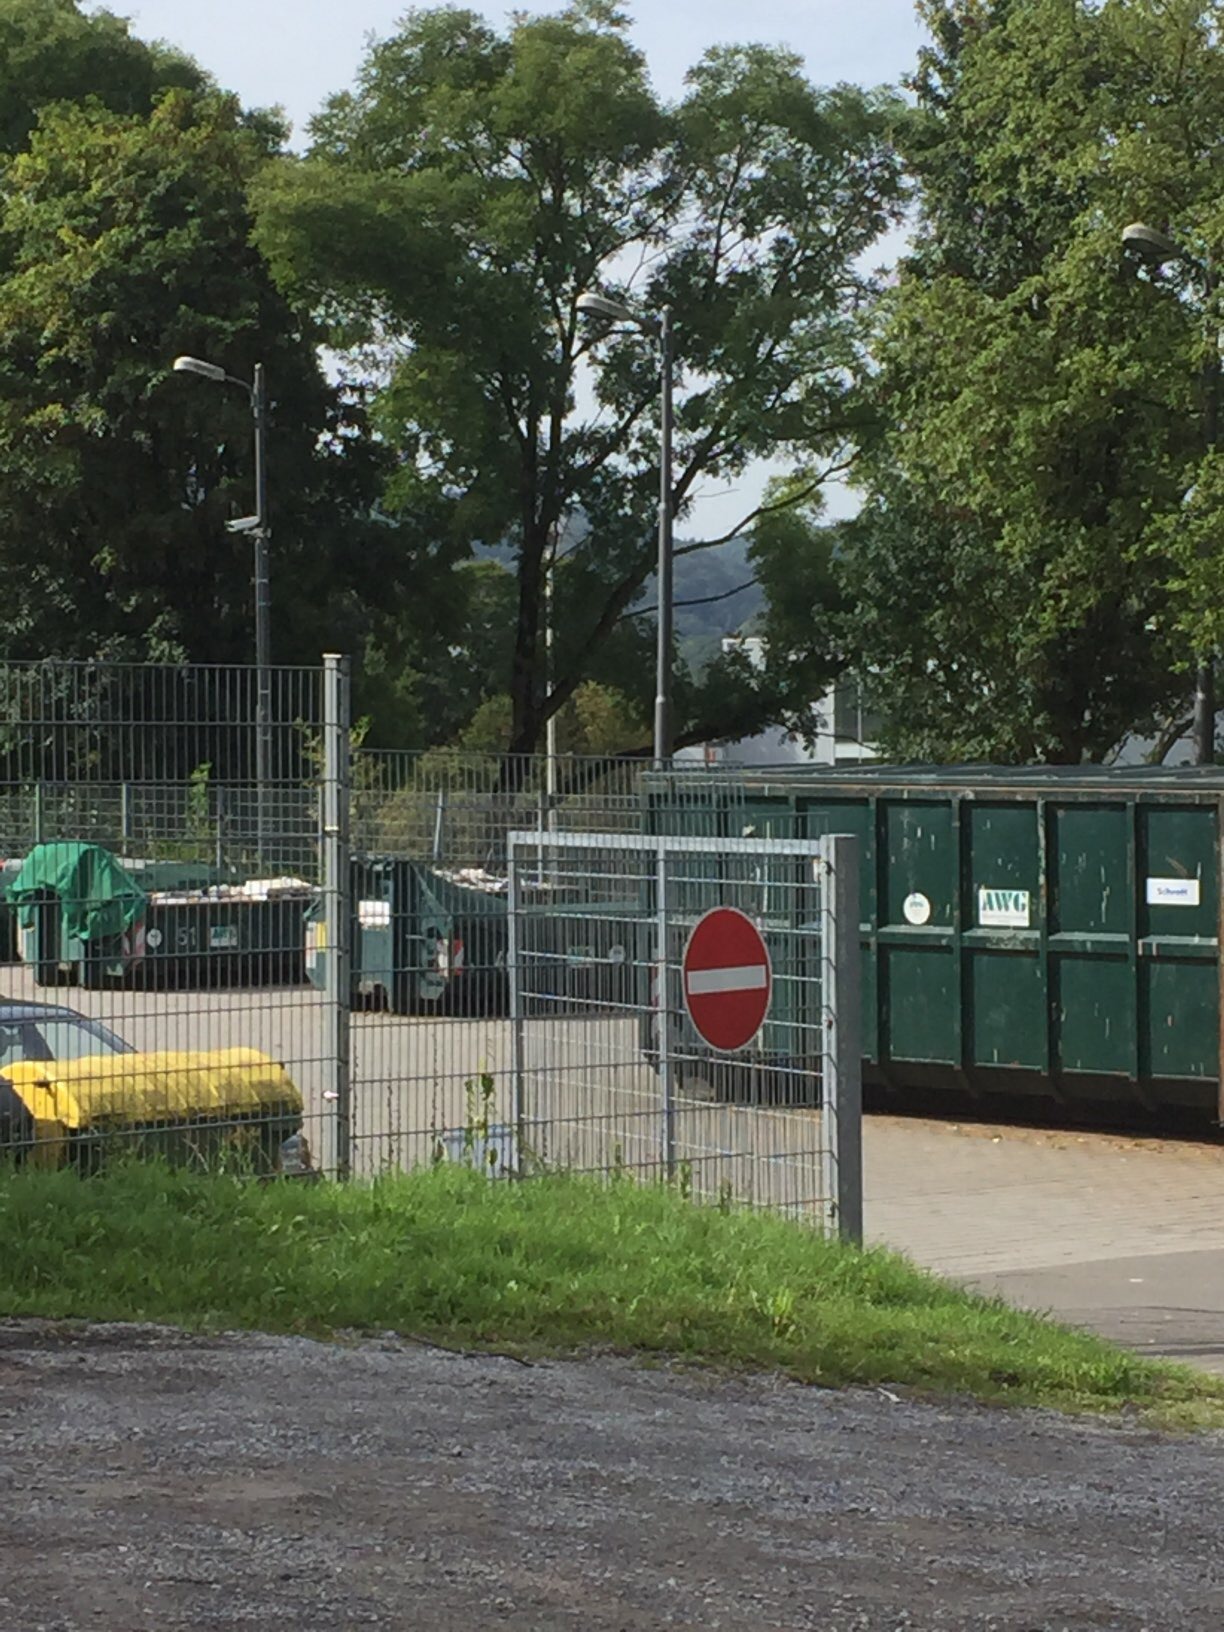 Bild 22 AWG Abfallwirtschafts- gesellschaft mbH Wuppertal in Wuppertal